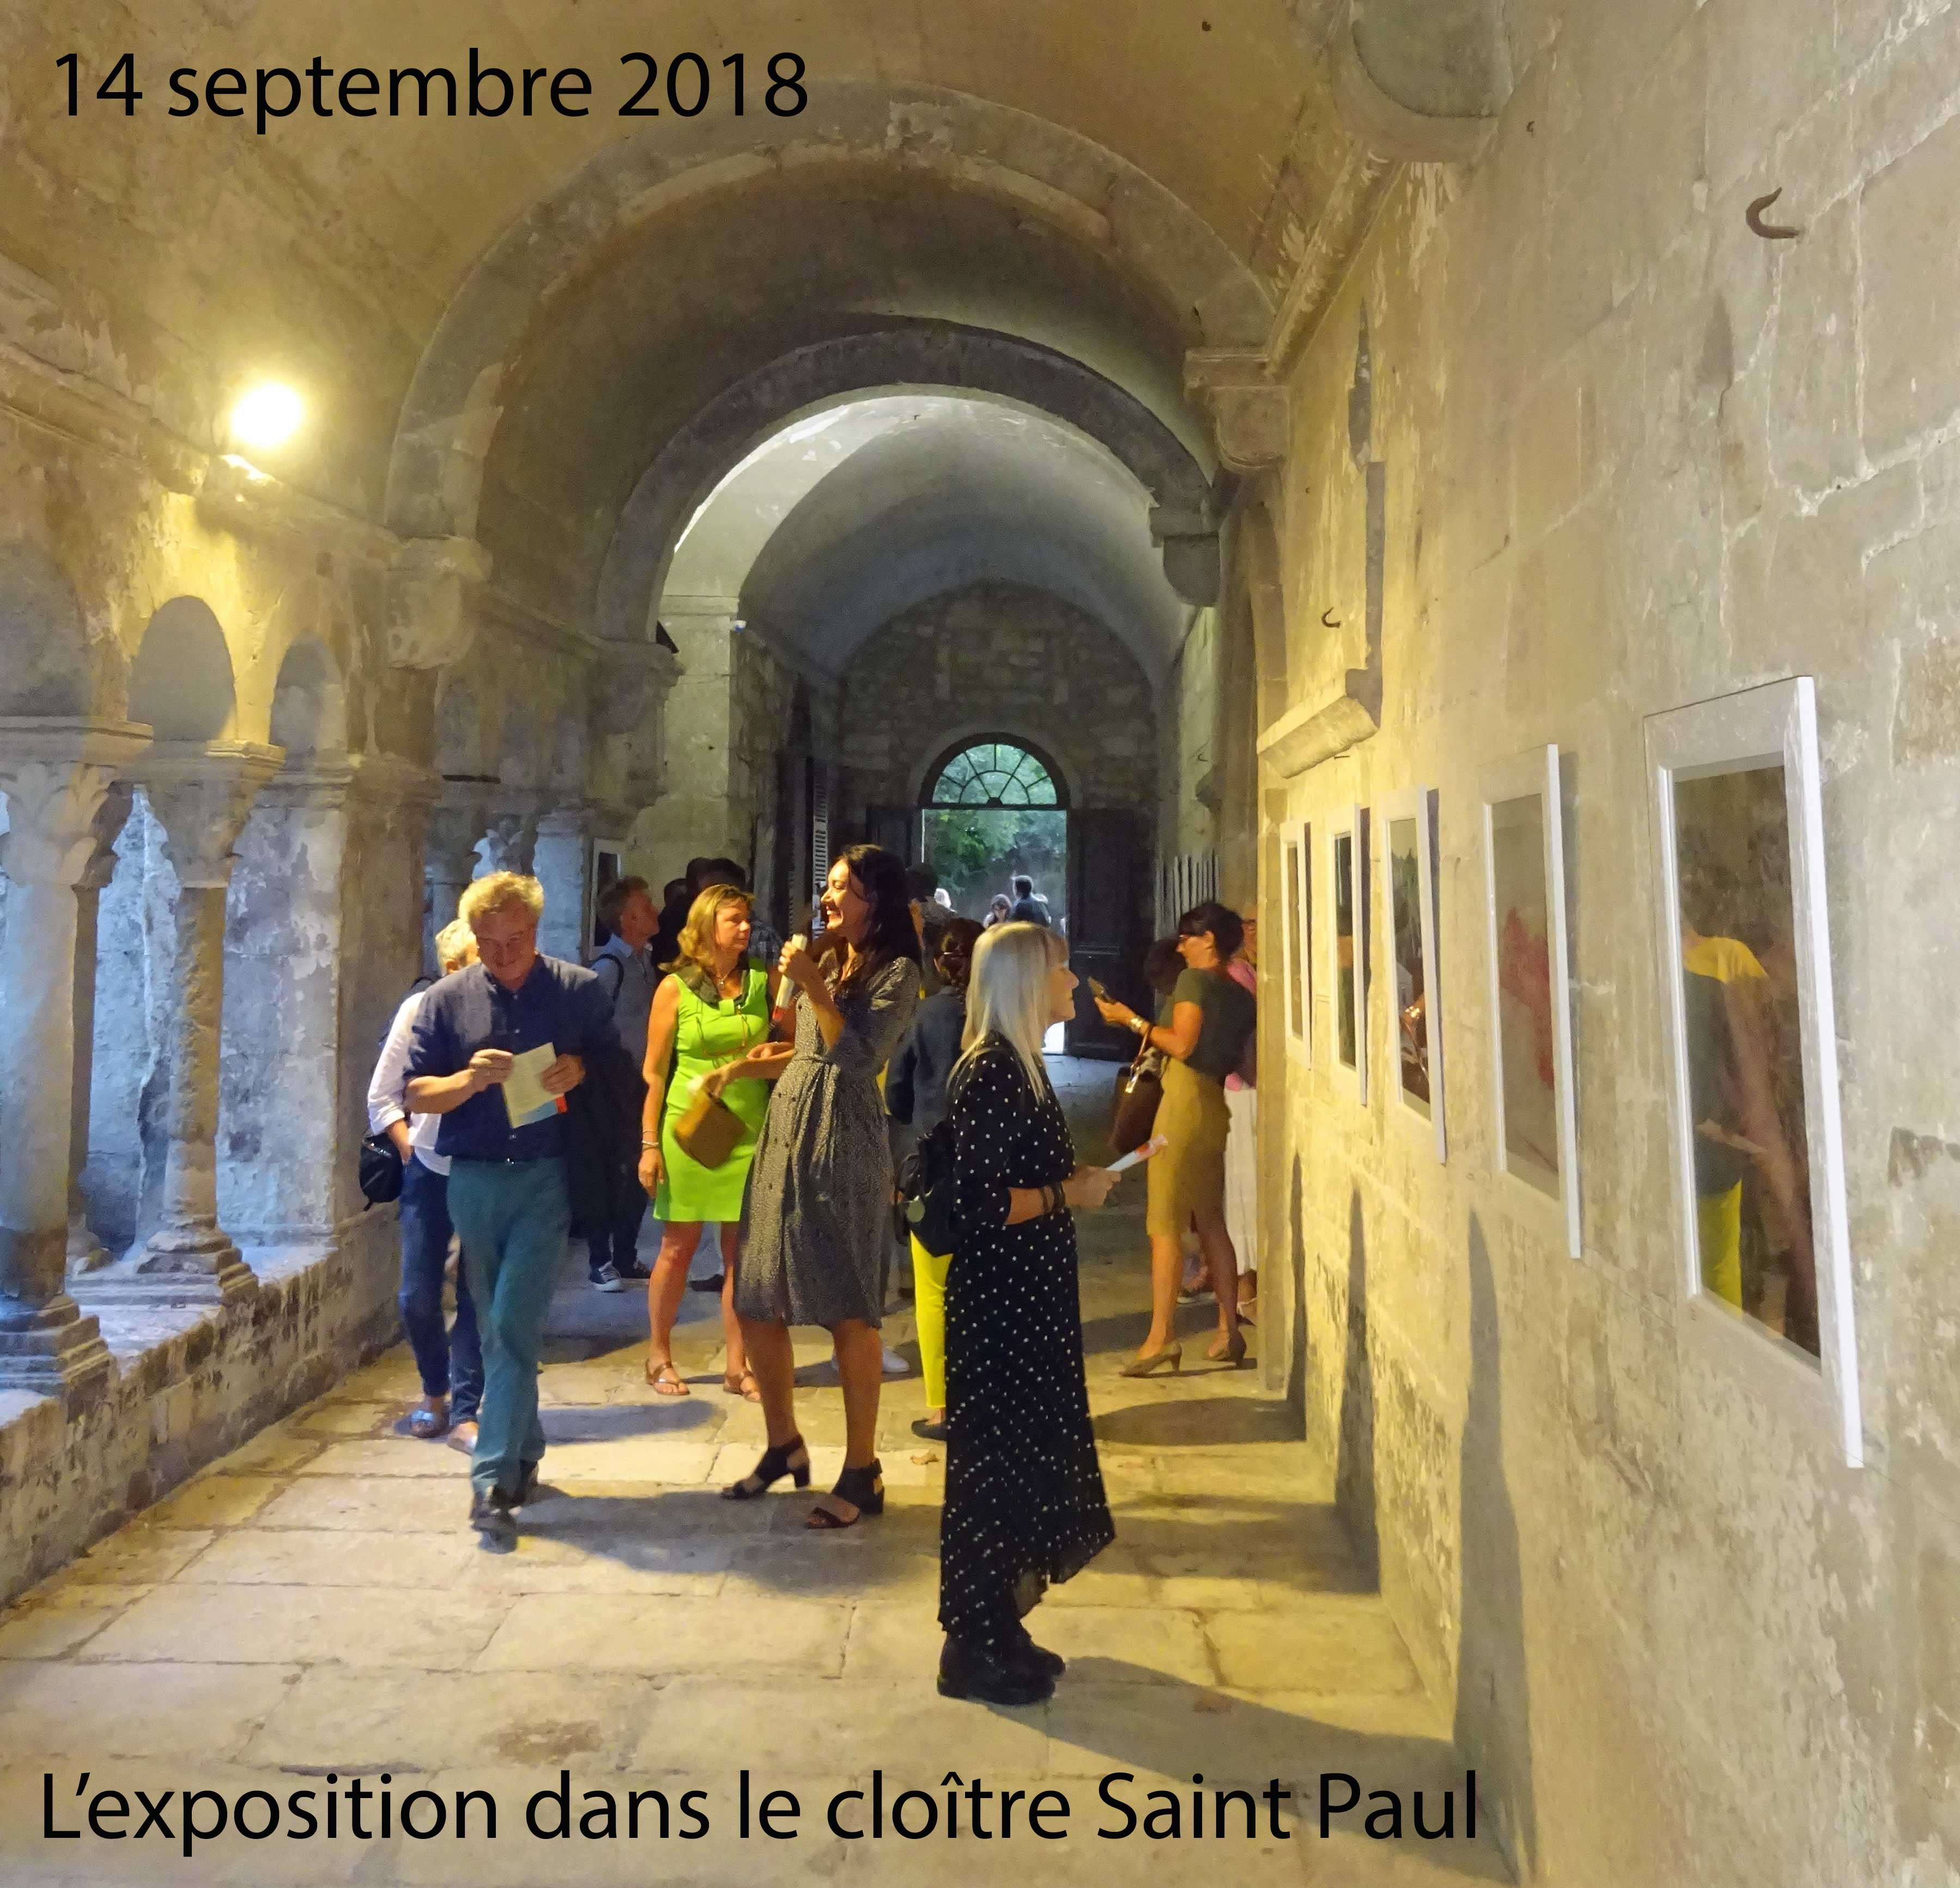 Invitation à un vernissage à la clinique Van Gogh de Saint Rémy de Provence (14 septembre 2018)